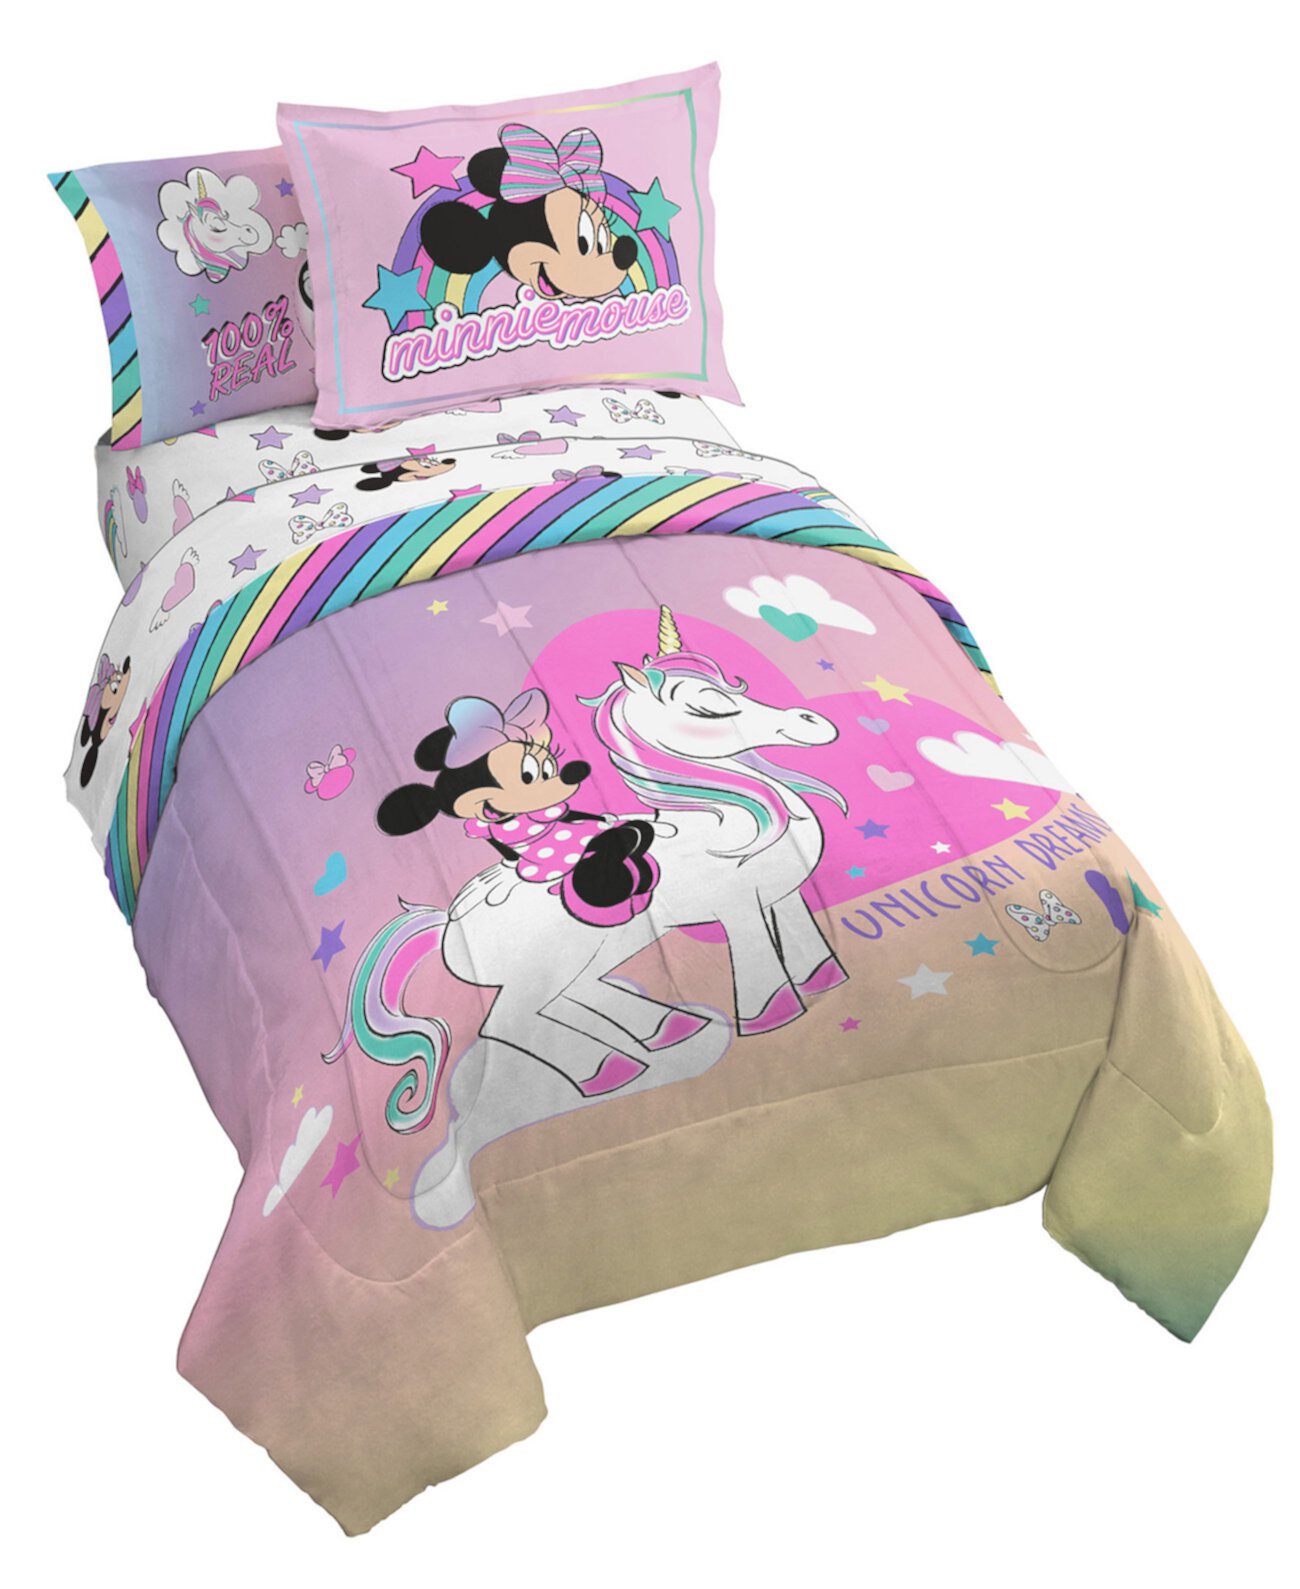 Комплект полной кровати Unicorn Dreams, 7 предм. Minnie Mouse